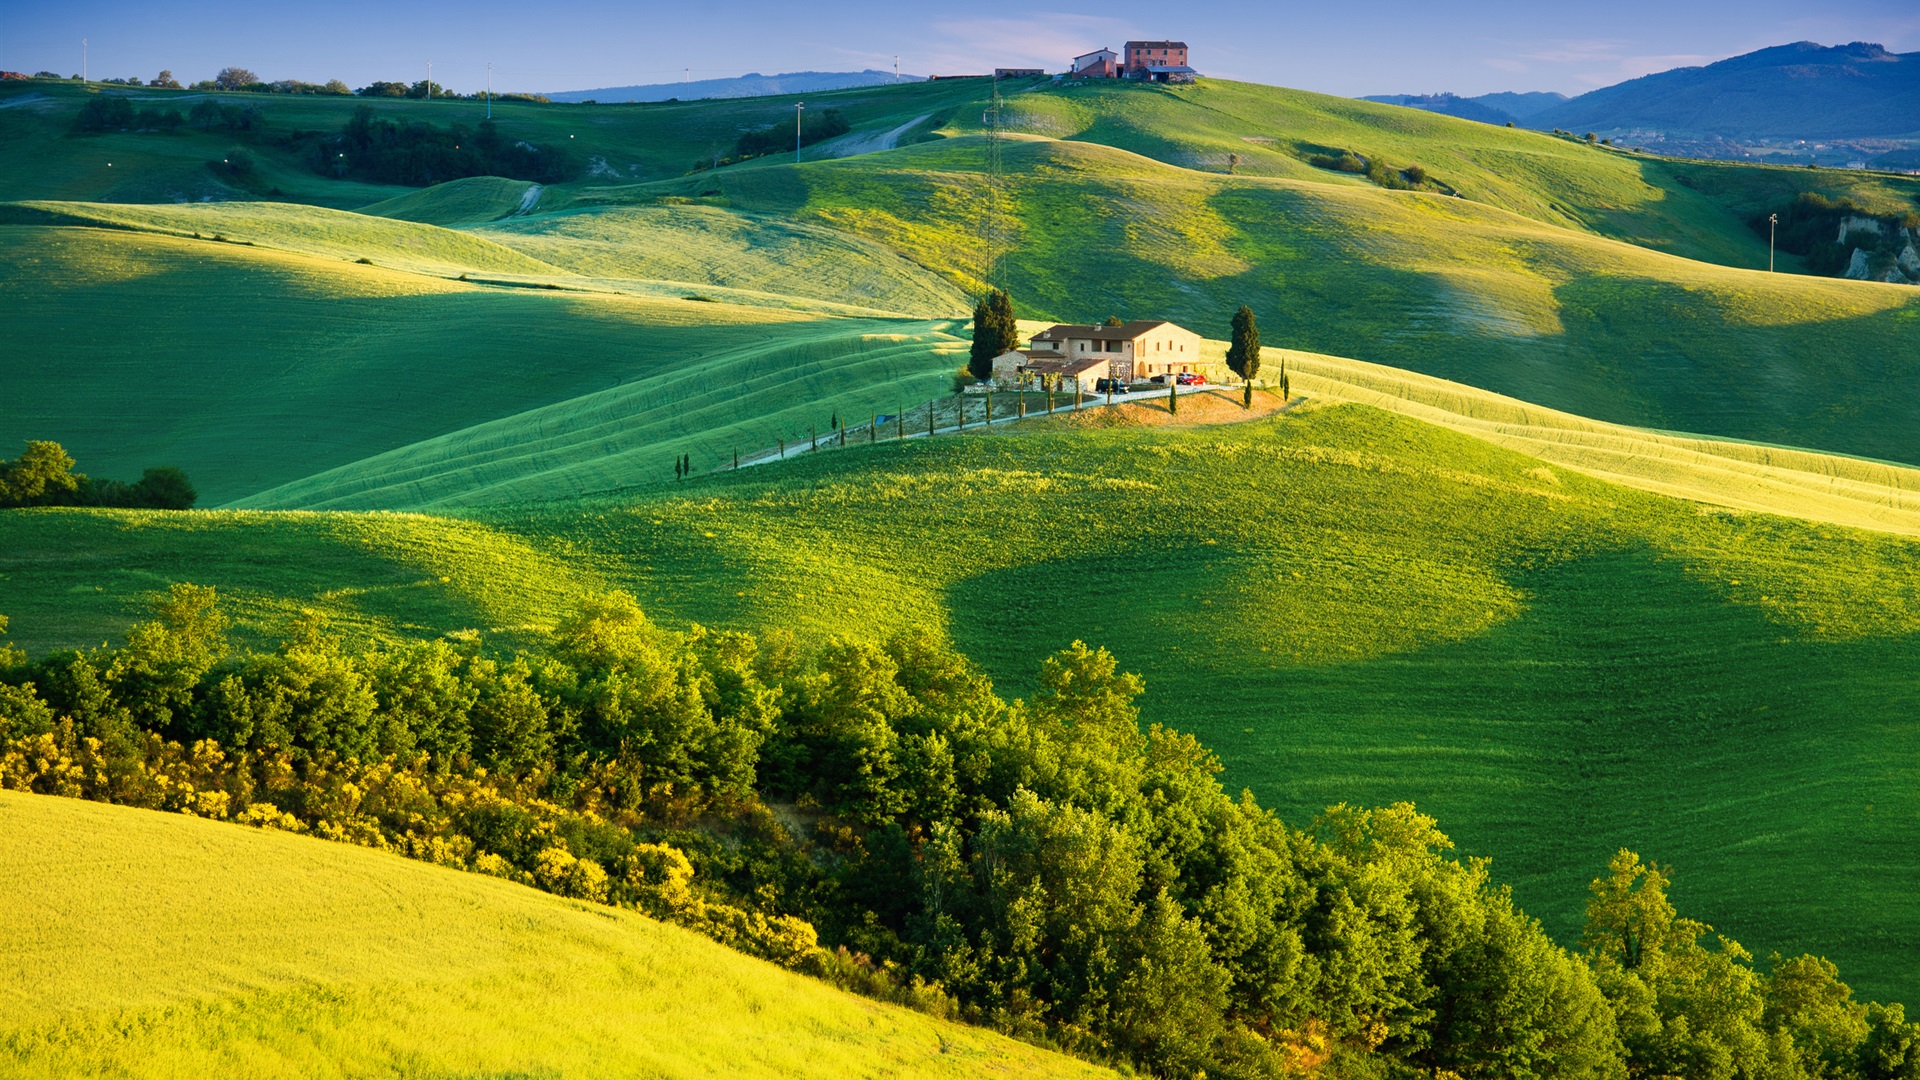 意大利 綠色的田野 美麗的風景電腦桌布 1920x1080 桌布下載 Hk Hdwall365 Com